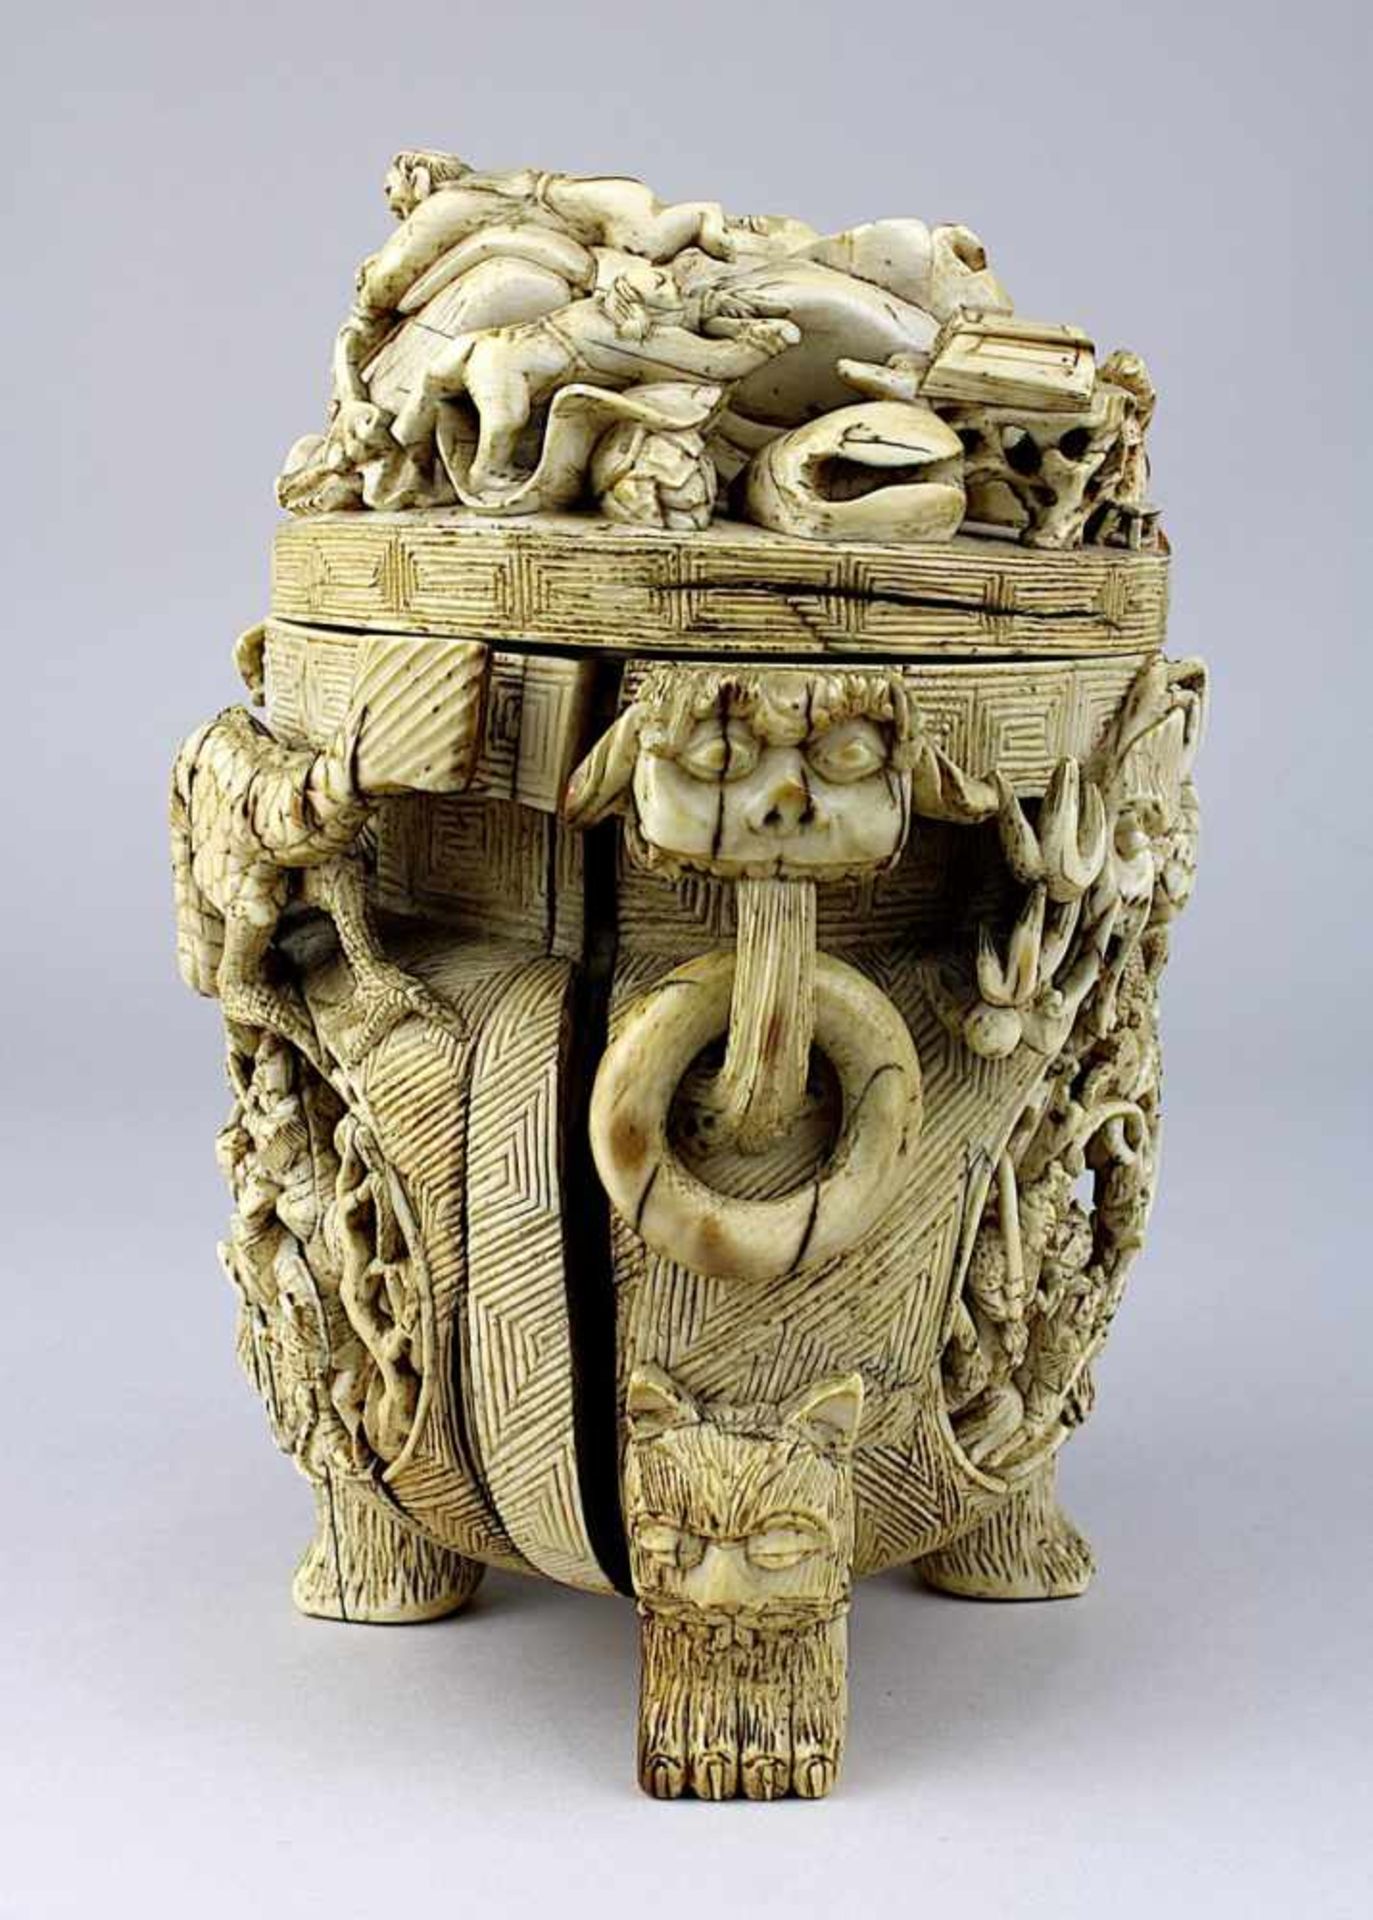 Chinesischer Koro mit Glücksbuddha, Elfenbein, 18./19. Jh., Korpus geschnitzt aus einem großen Stück - Bild 4 aus 6